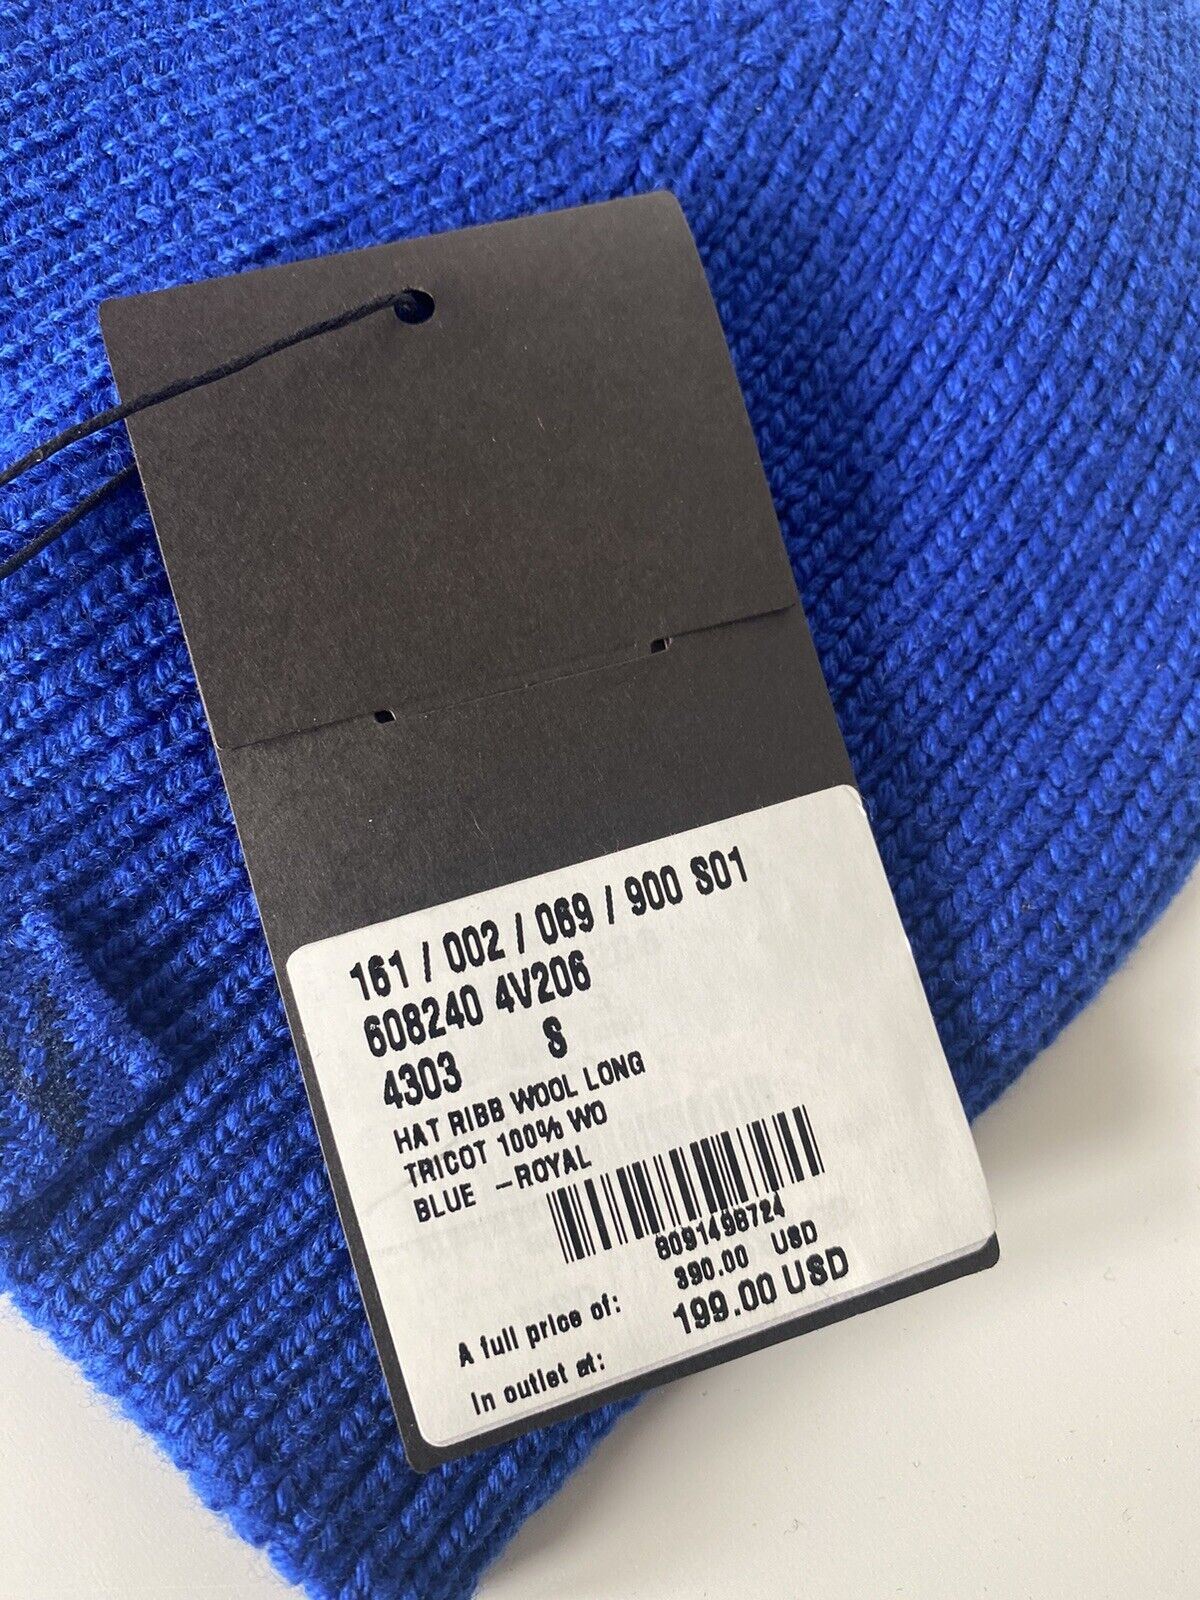 NWT 390 долларов США Bottega Veneta Трикотажная шляпа из 100% шерсти, синяя, маленькая 608240 Италия 